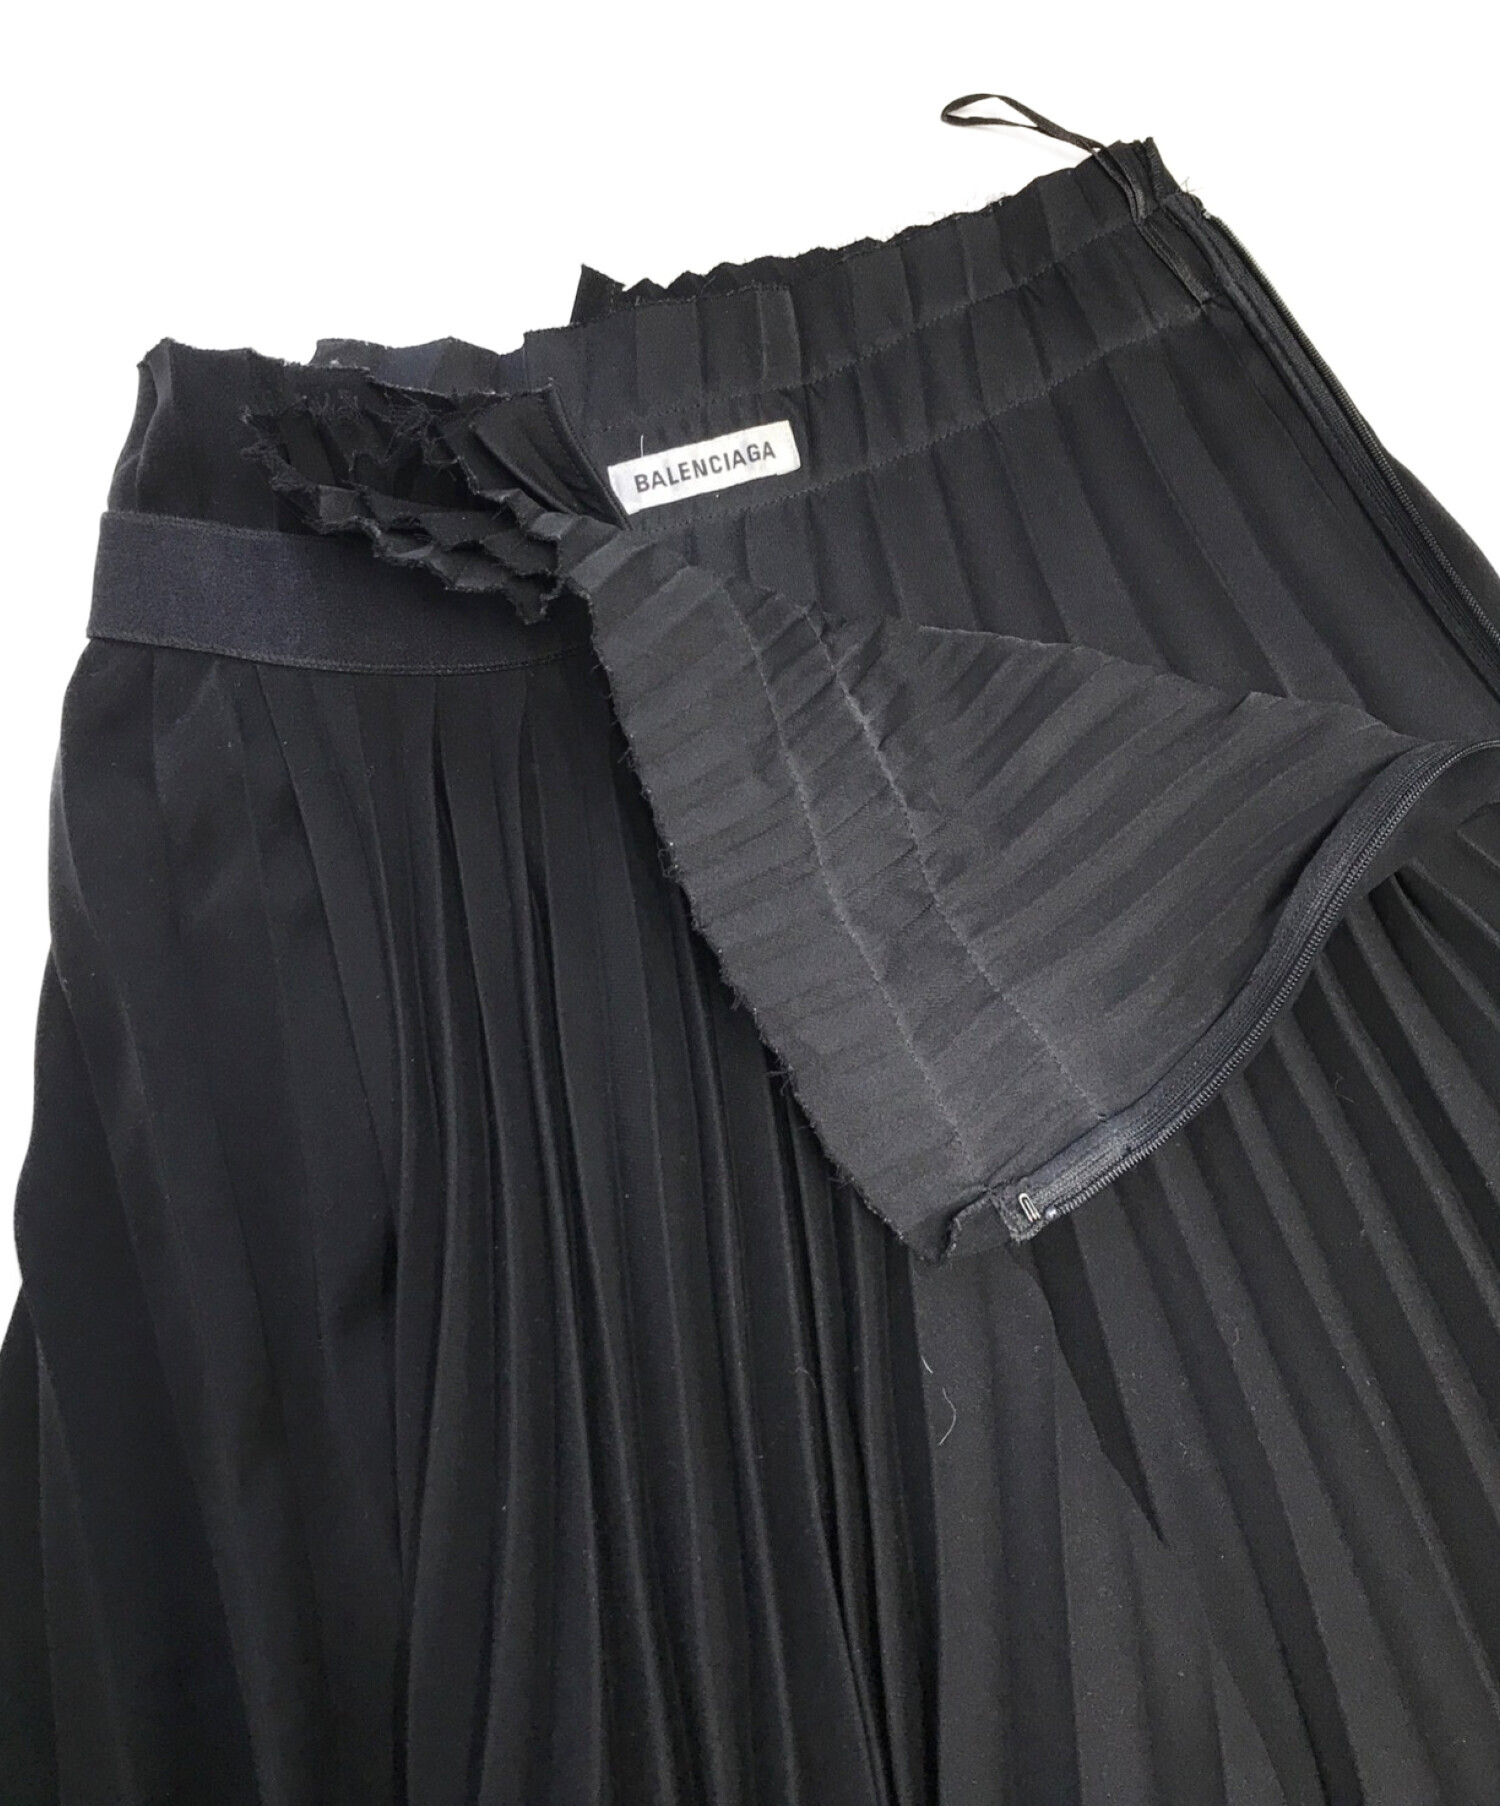 BALENCIAGA (バレンシアガ) ロゴプリーツスカート ブラック サイズ:34